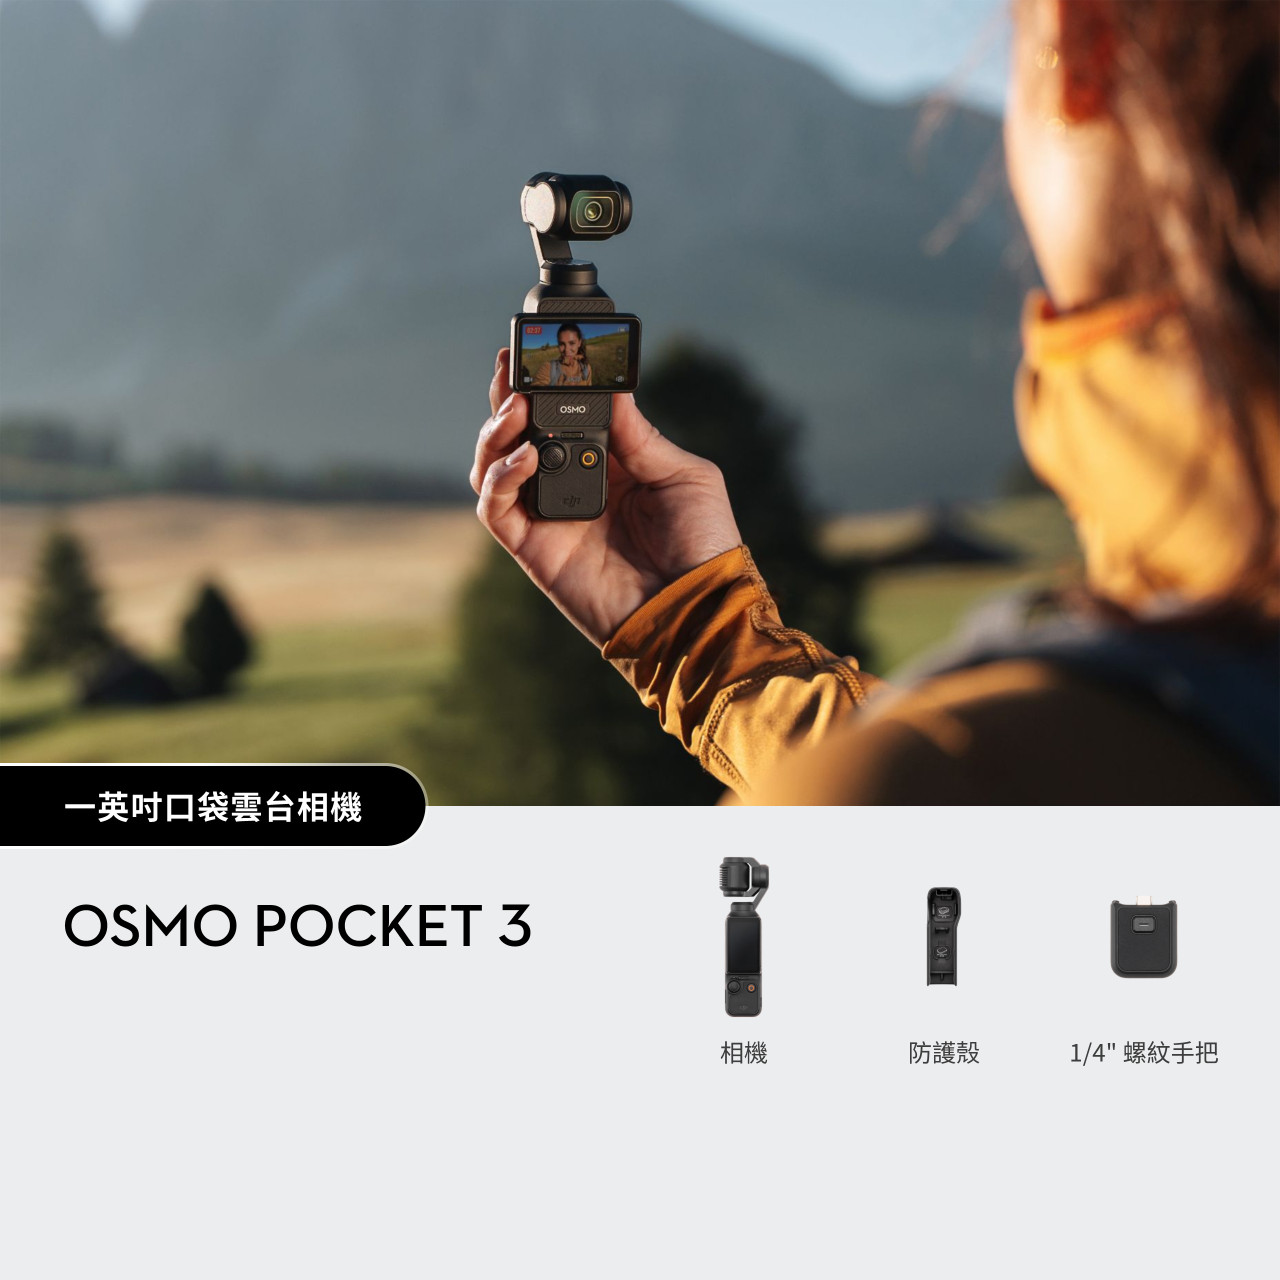 DJI Osmo Pocket 3 Stabilized Camera 4K 一英吋口袋雲台相機